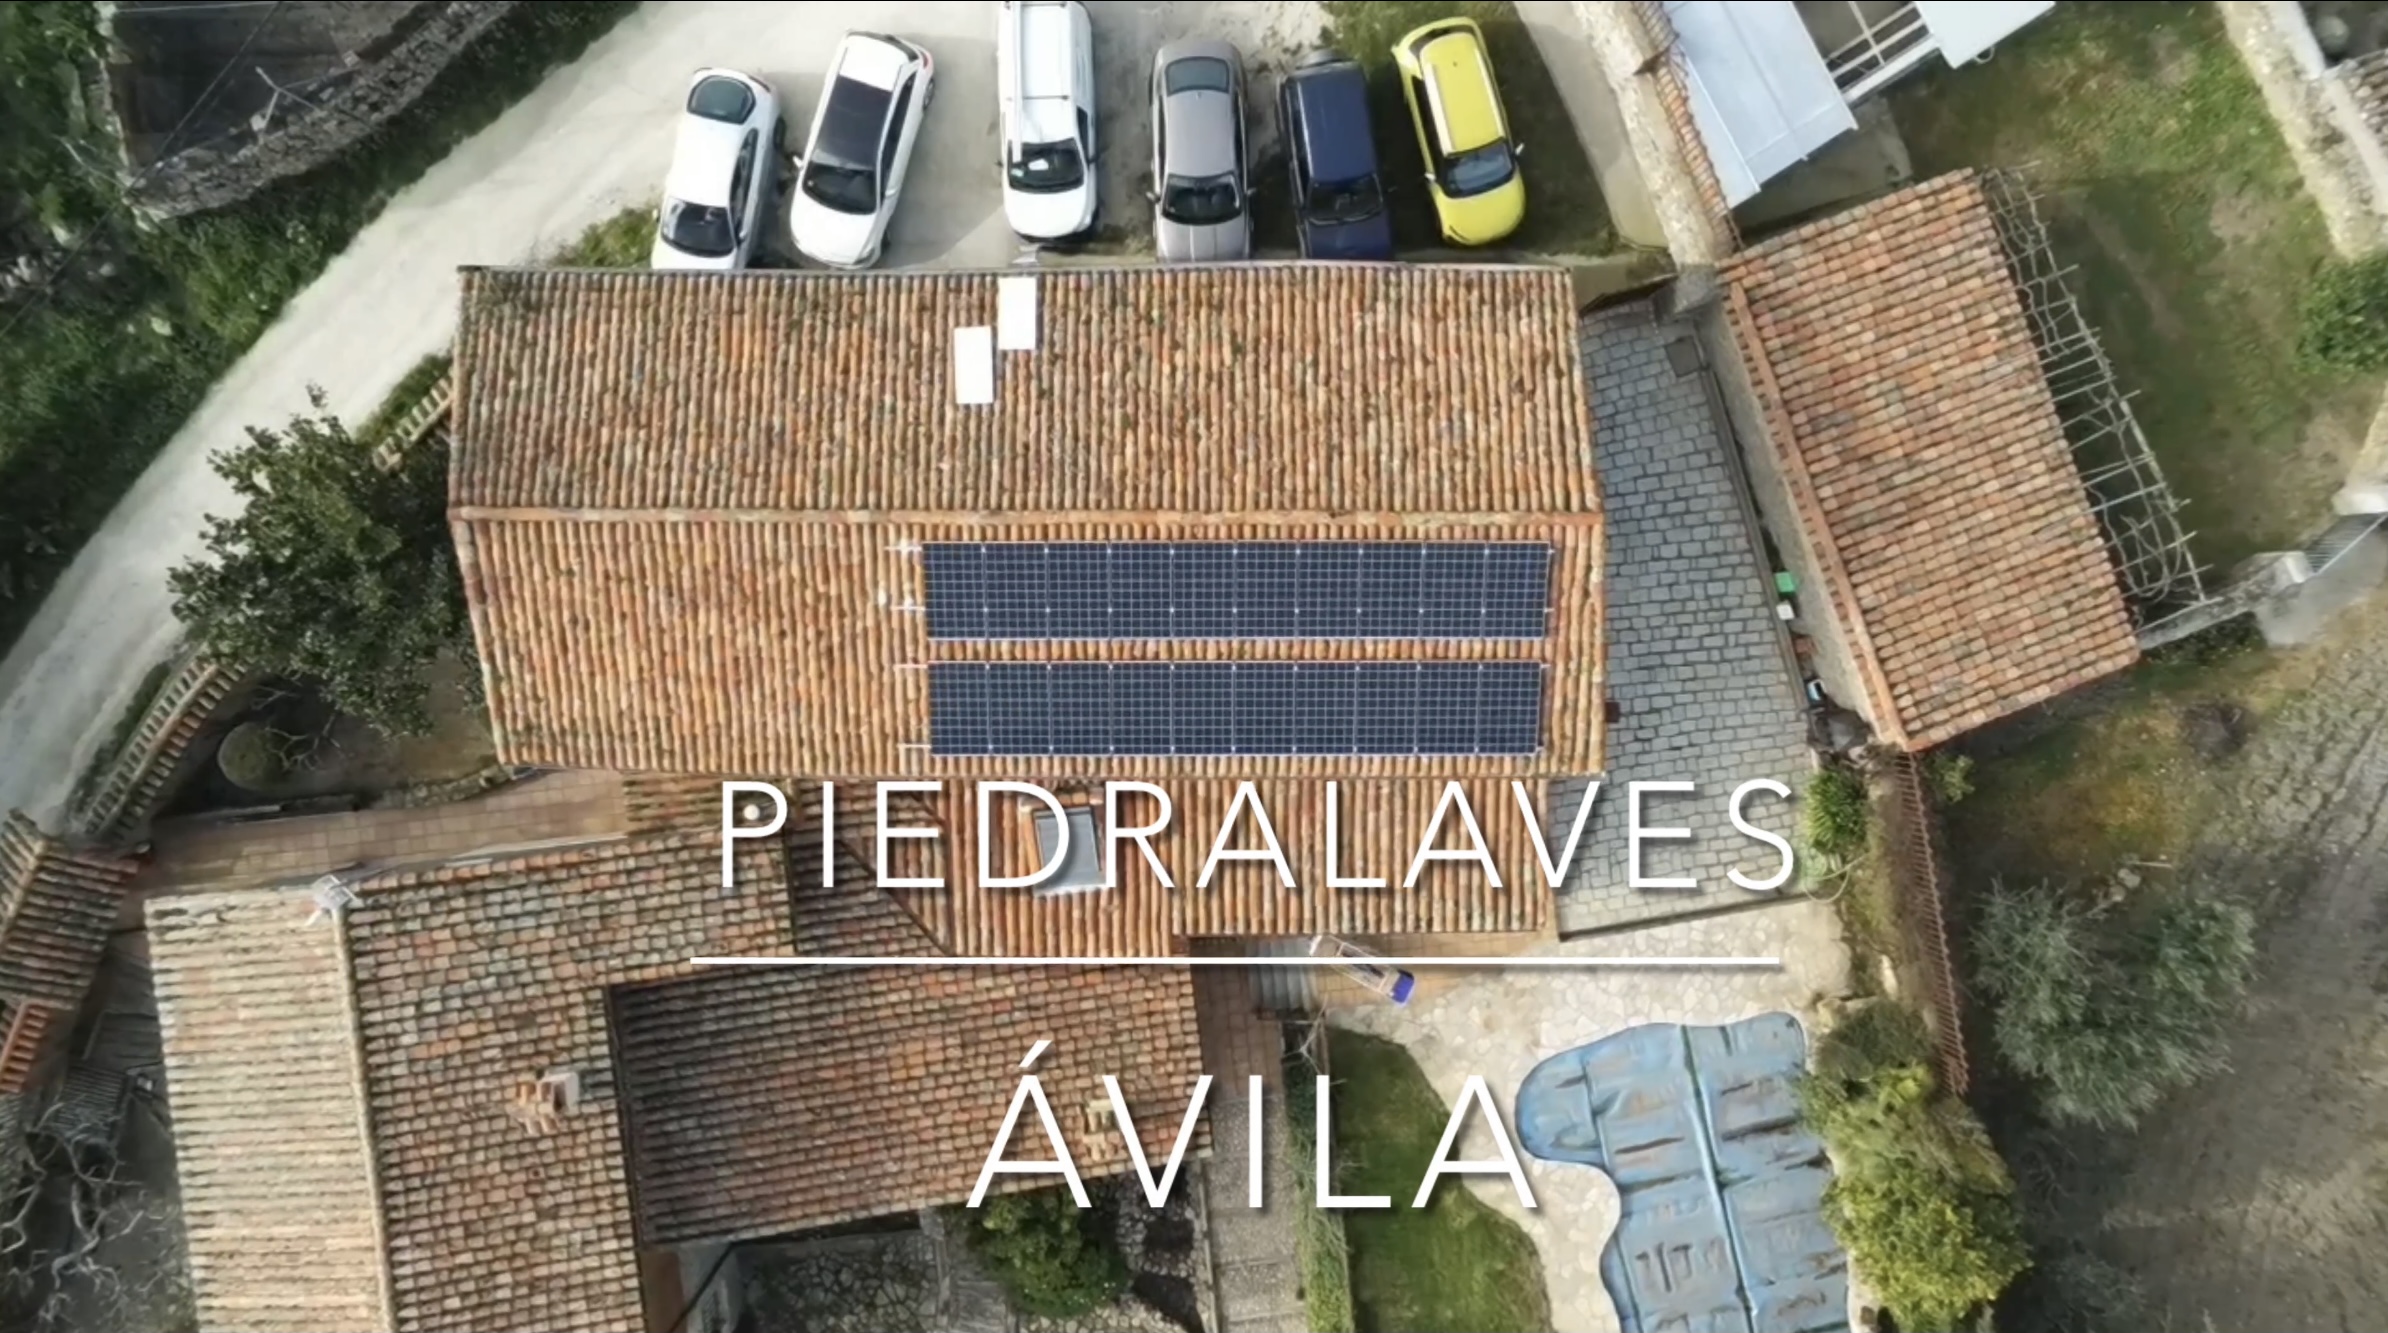 Instalación de autoconsumo residencial en Piedralaves, Ávila